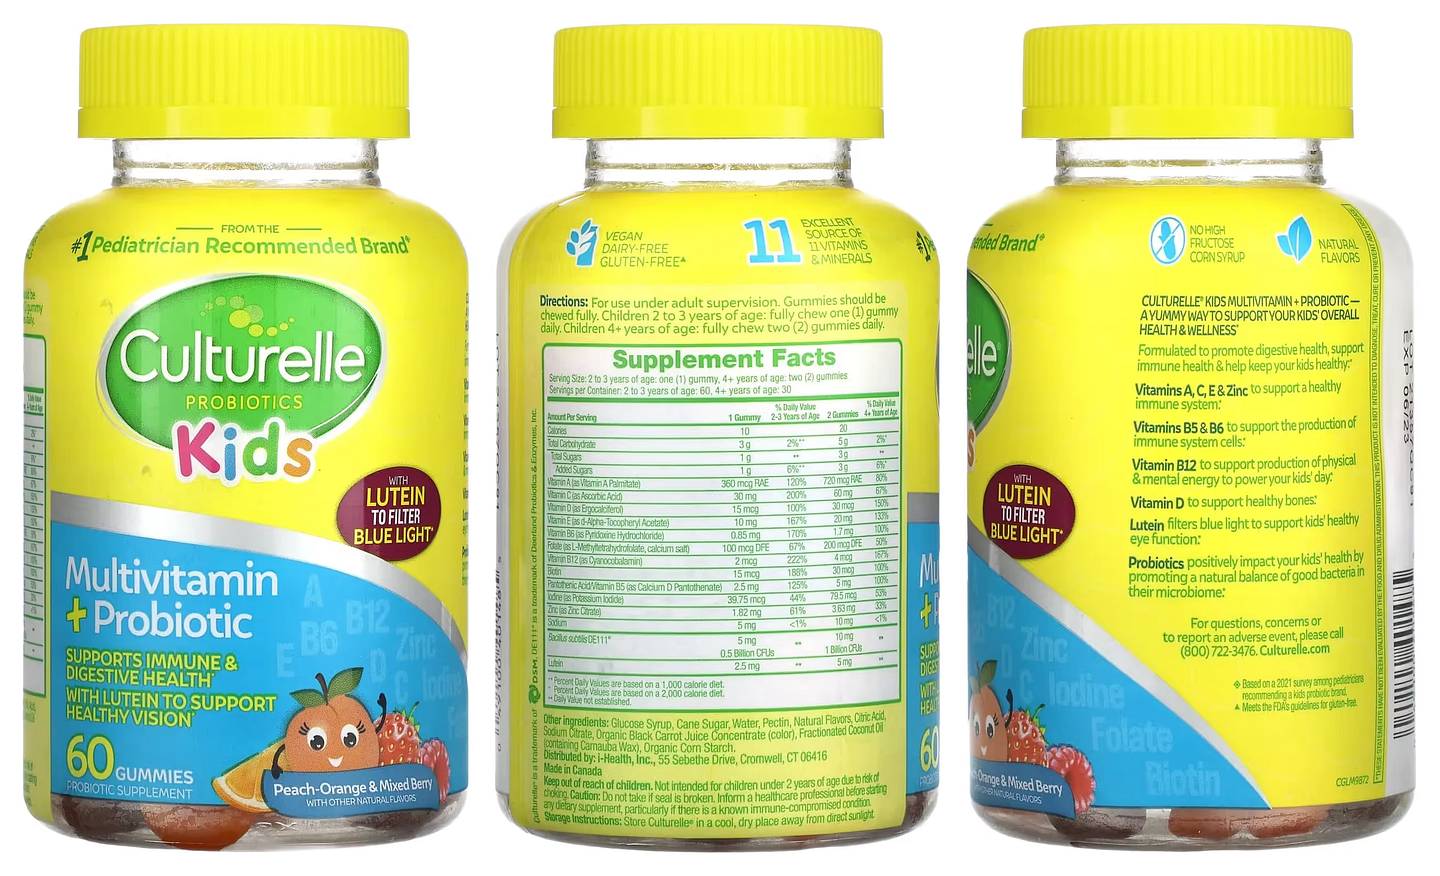 Culturelle, Kids Probiotics, Multivitamin + Probiotic packaging